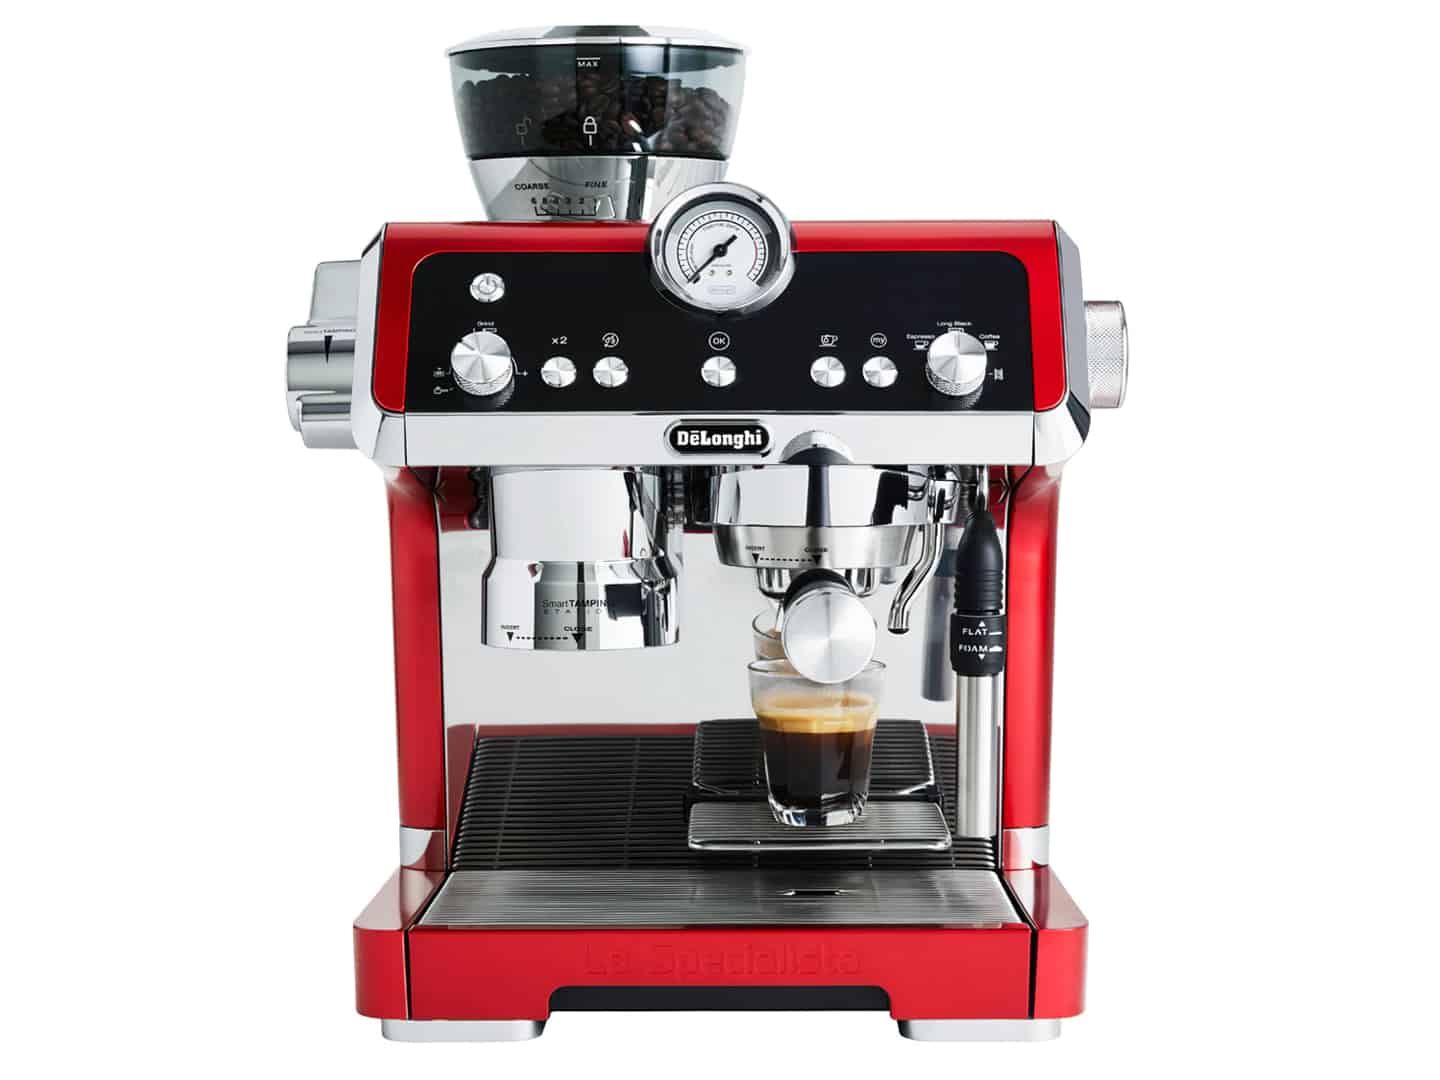 DeLonghi La Specialista Espresso Machine